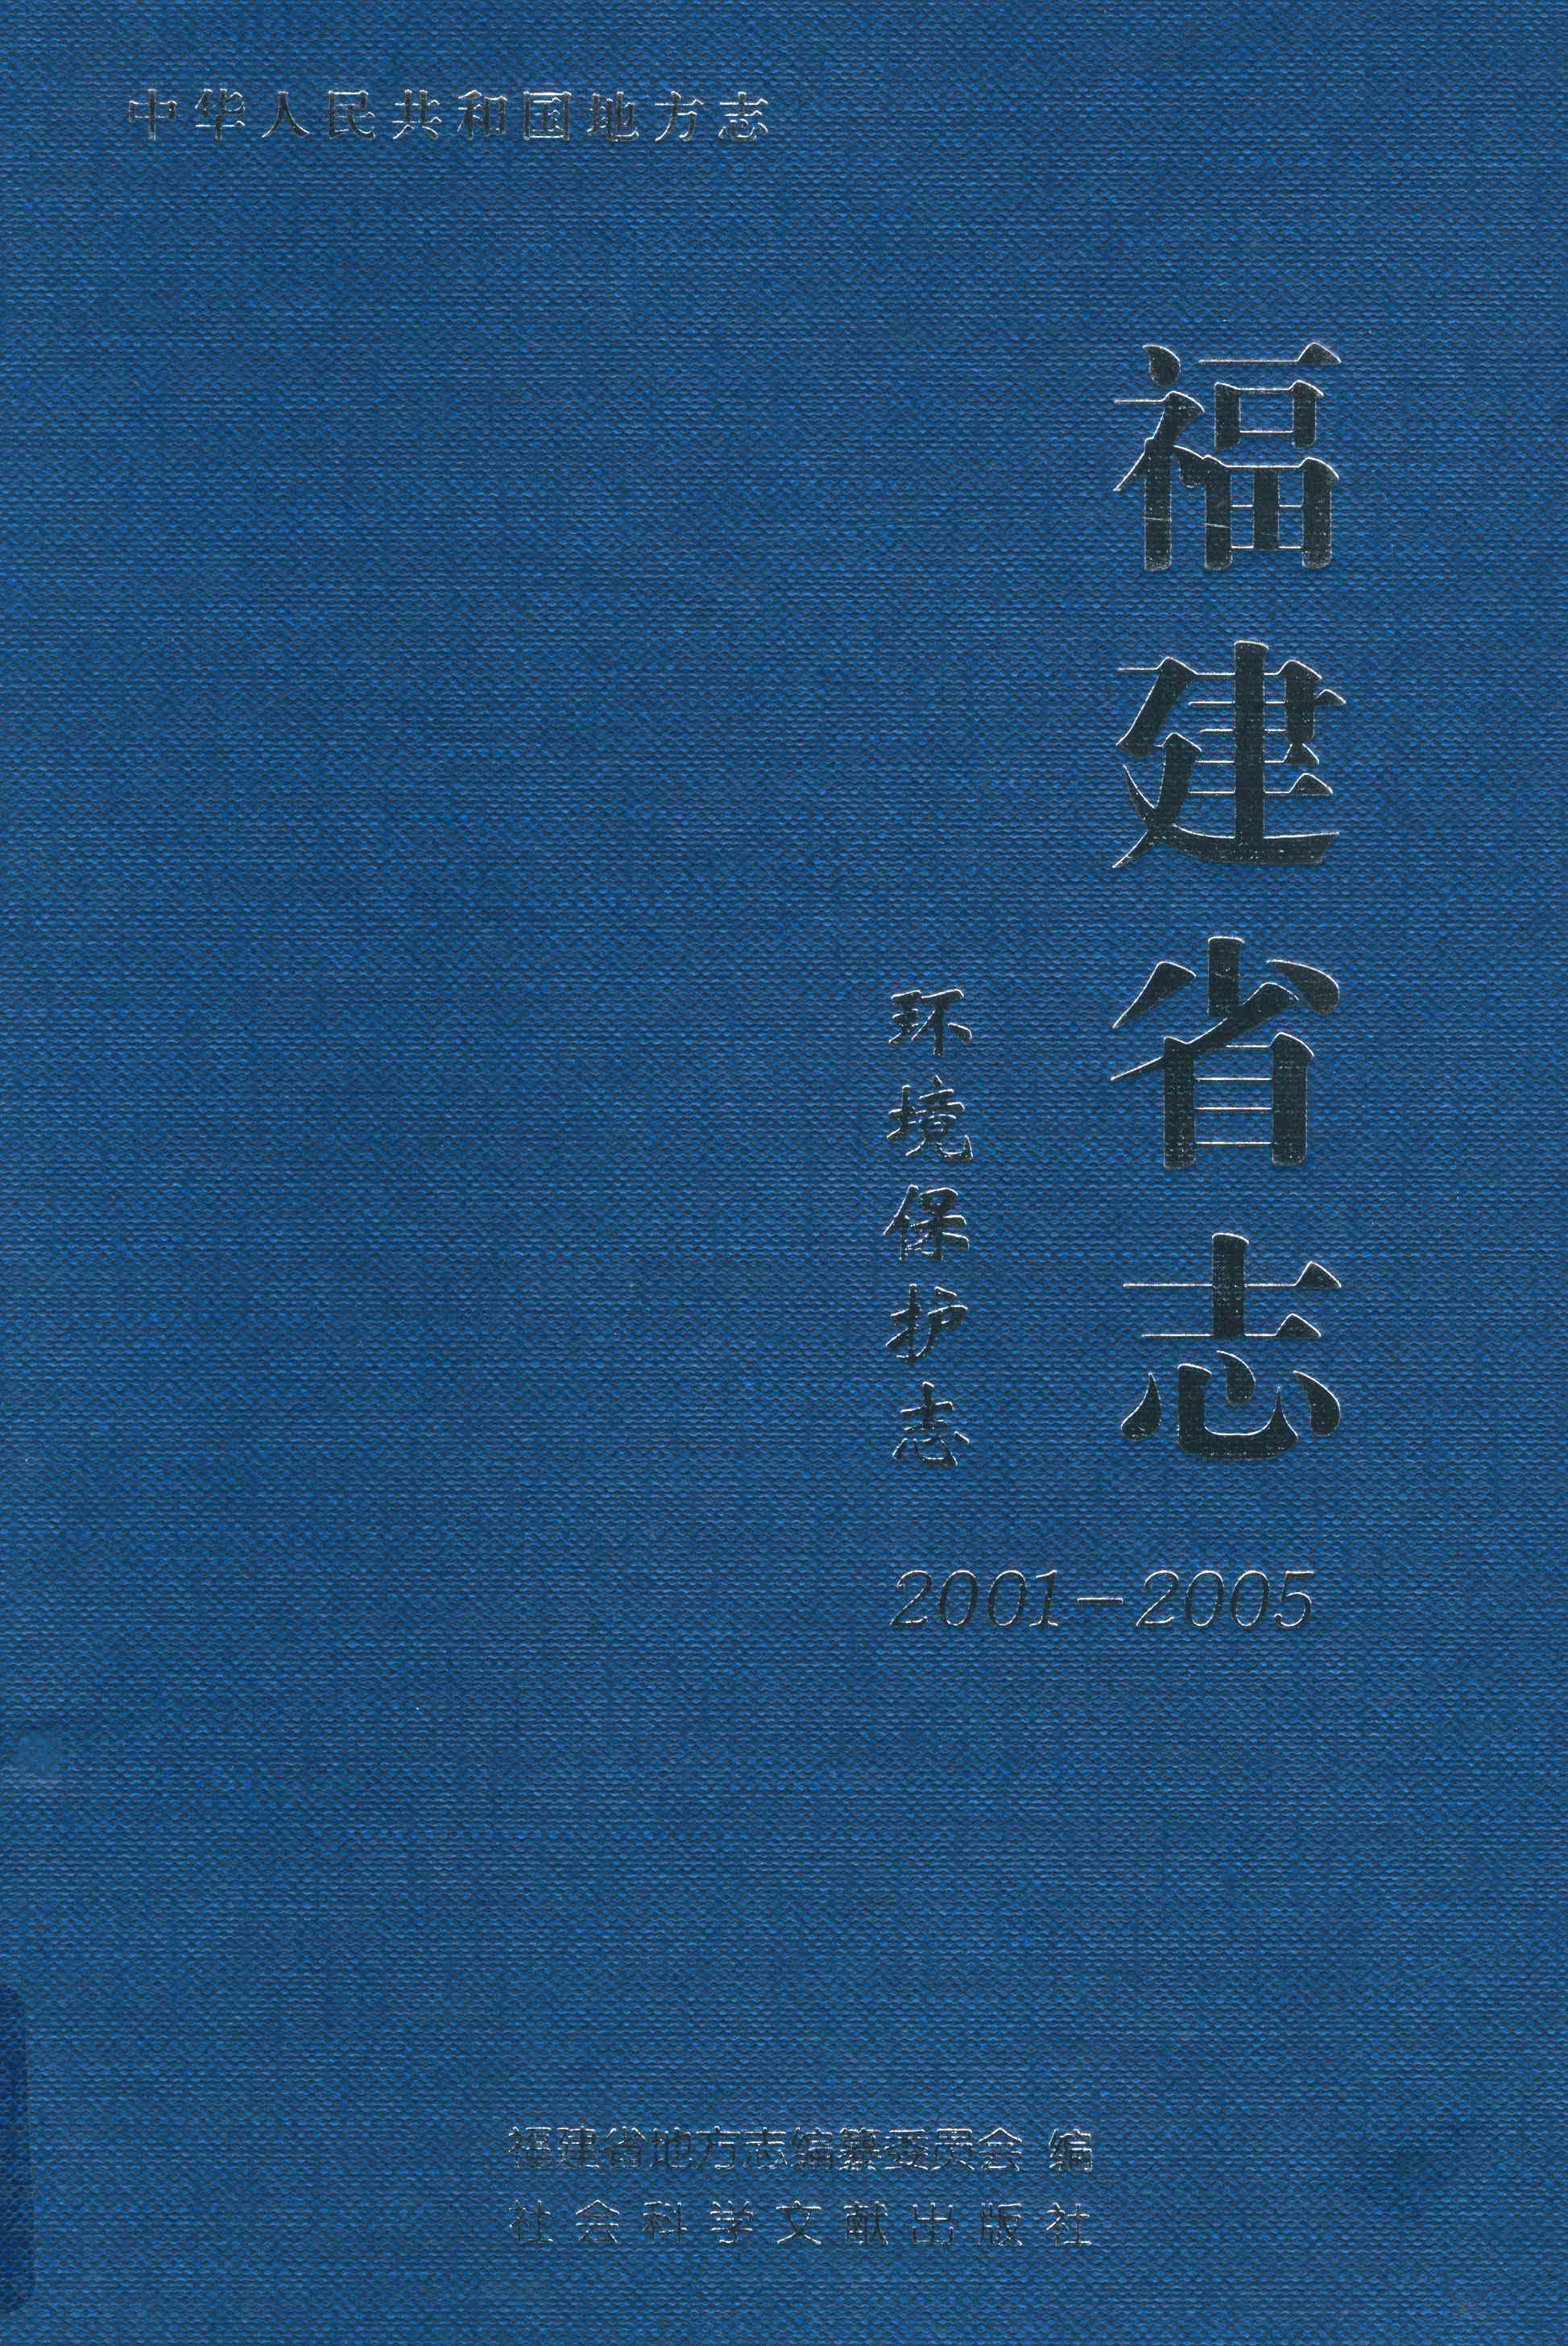 福建省志 环境保护志2001-2005